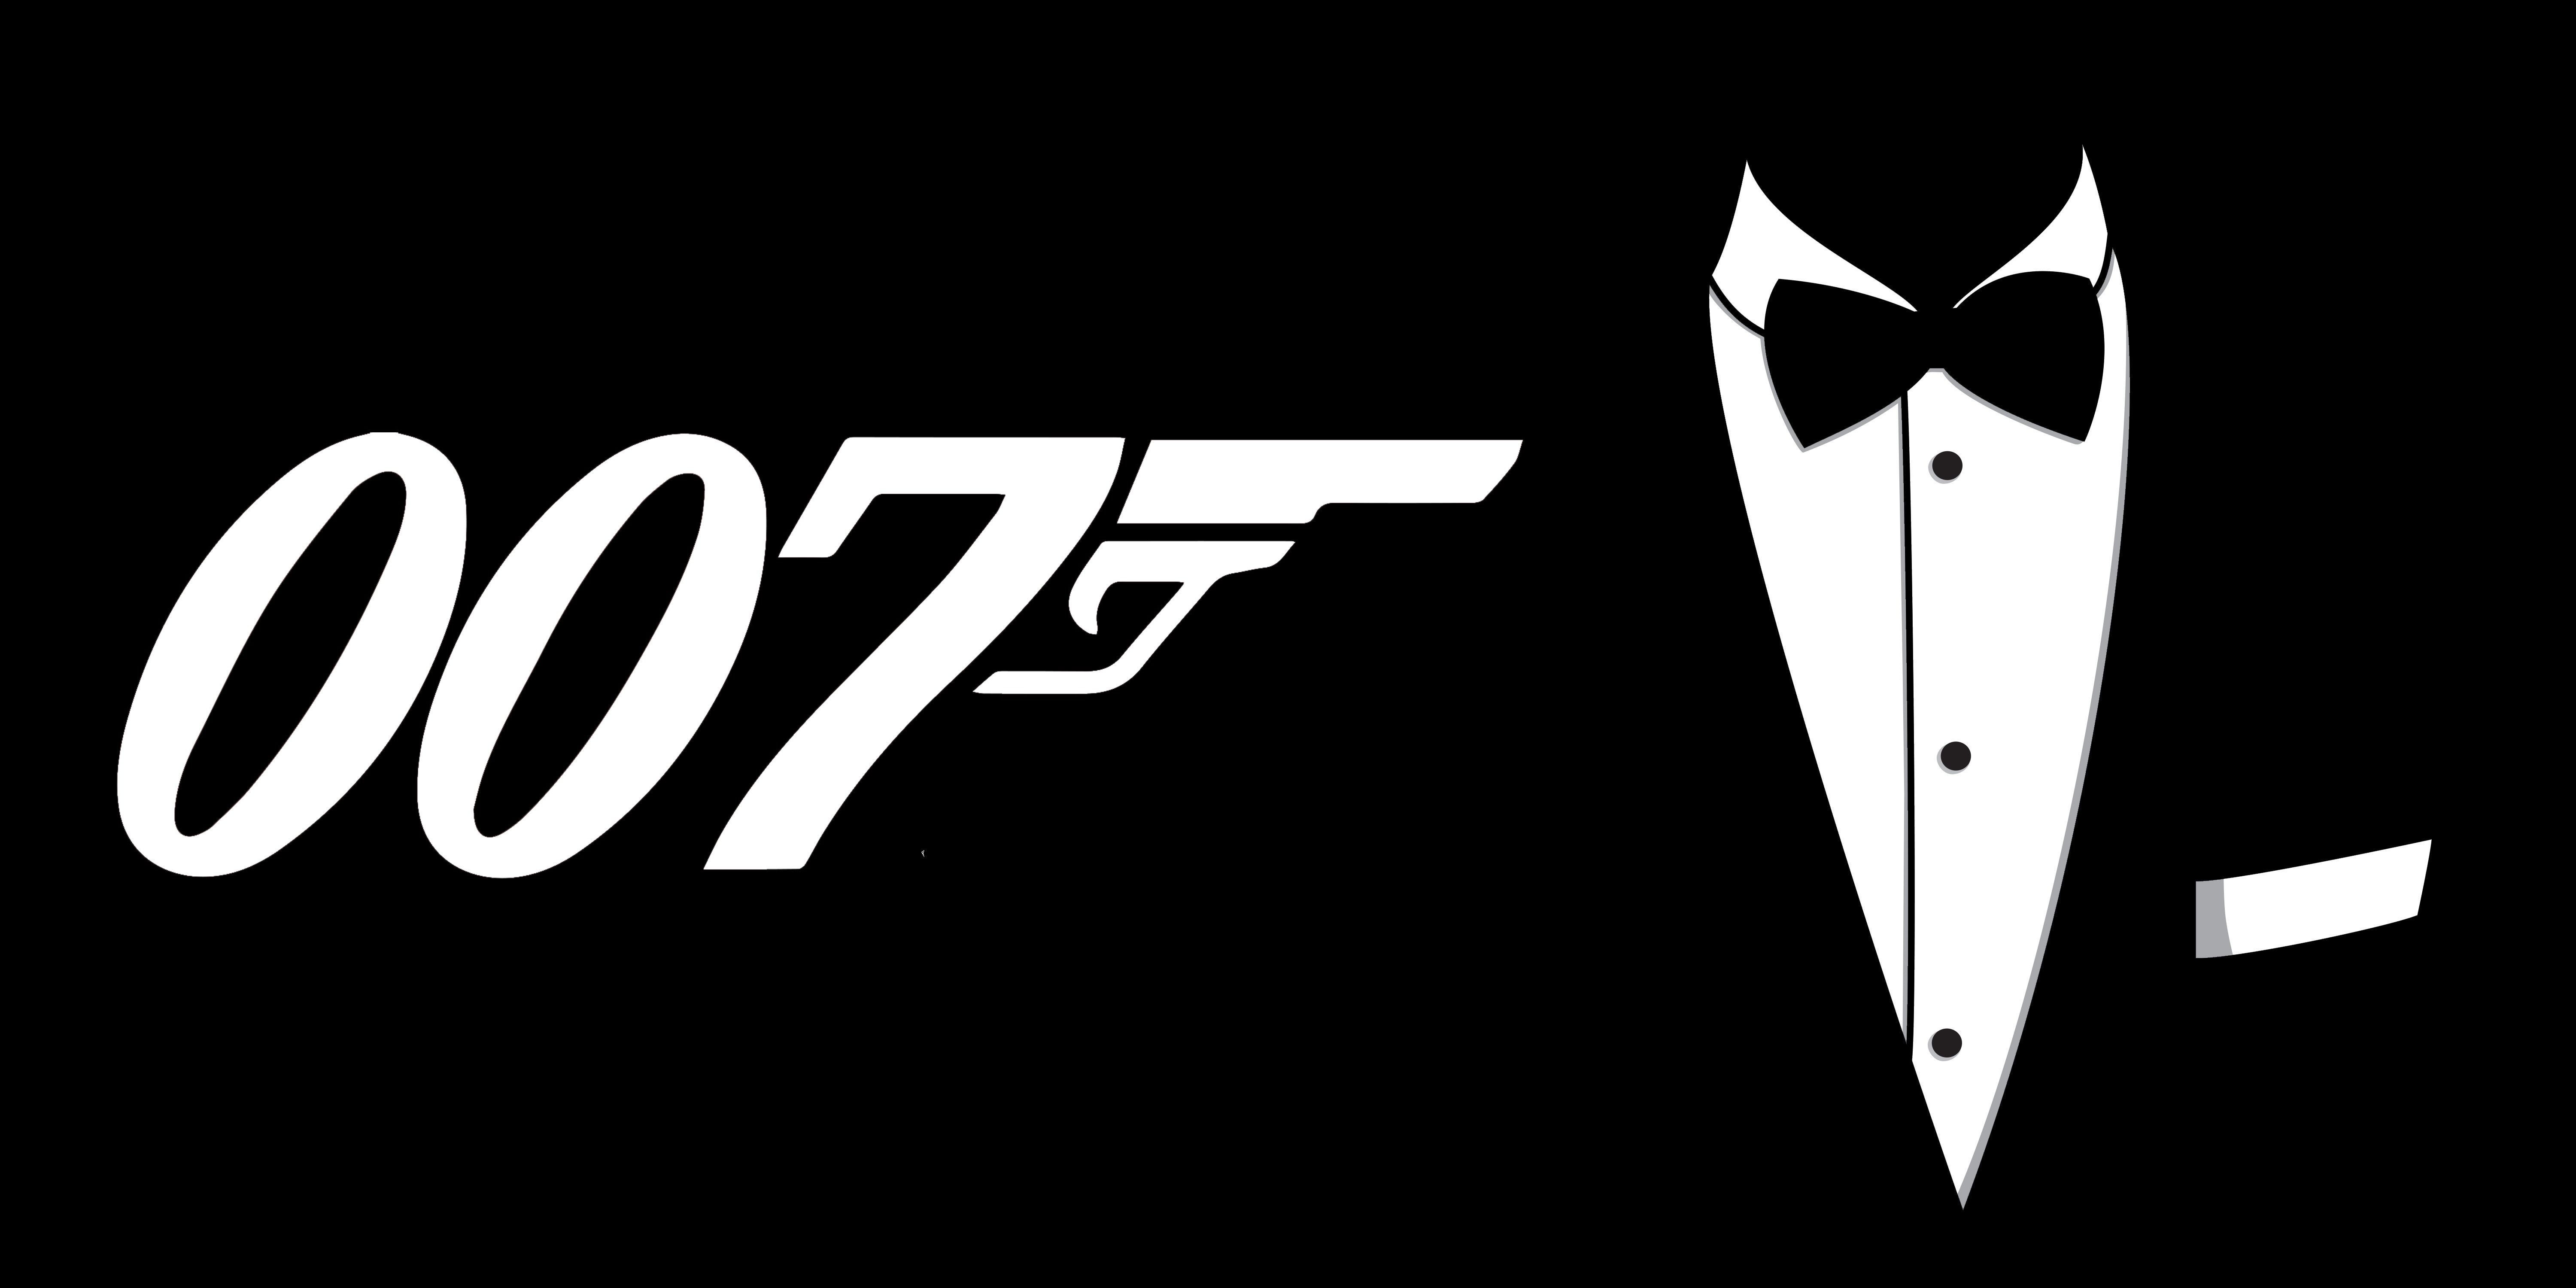 Bạn là fan của James Bond? Hãy tải hình nền James Bond 4K miễn phí để cảm nhận giải trí tuyệt vời. Hình nền 4K đưa bạn đến gần hơn với thế giới 007, mang lại cho bạn không gian tuyệt vời và hỗ trợ dần bạn vào thế giới phiêu lưu đầy kịch tính.